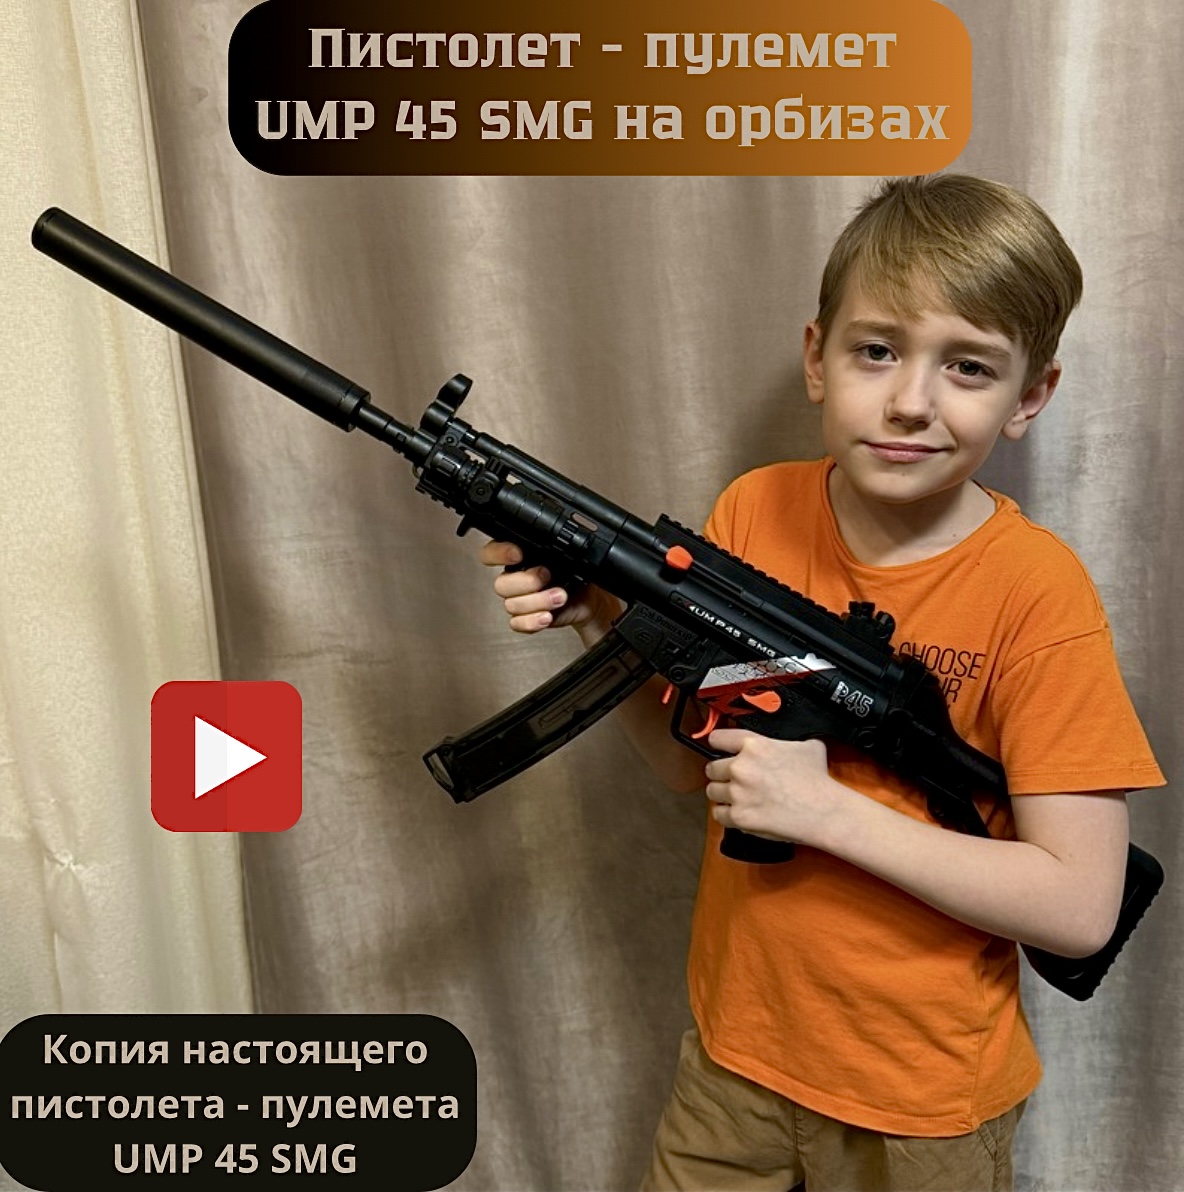 Пистолет-пулемет детский игровой RanCap UMP 45 SMG с орбизами (игрушка) пистолет shantou с лазерным прицелом 20см 1b01490